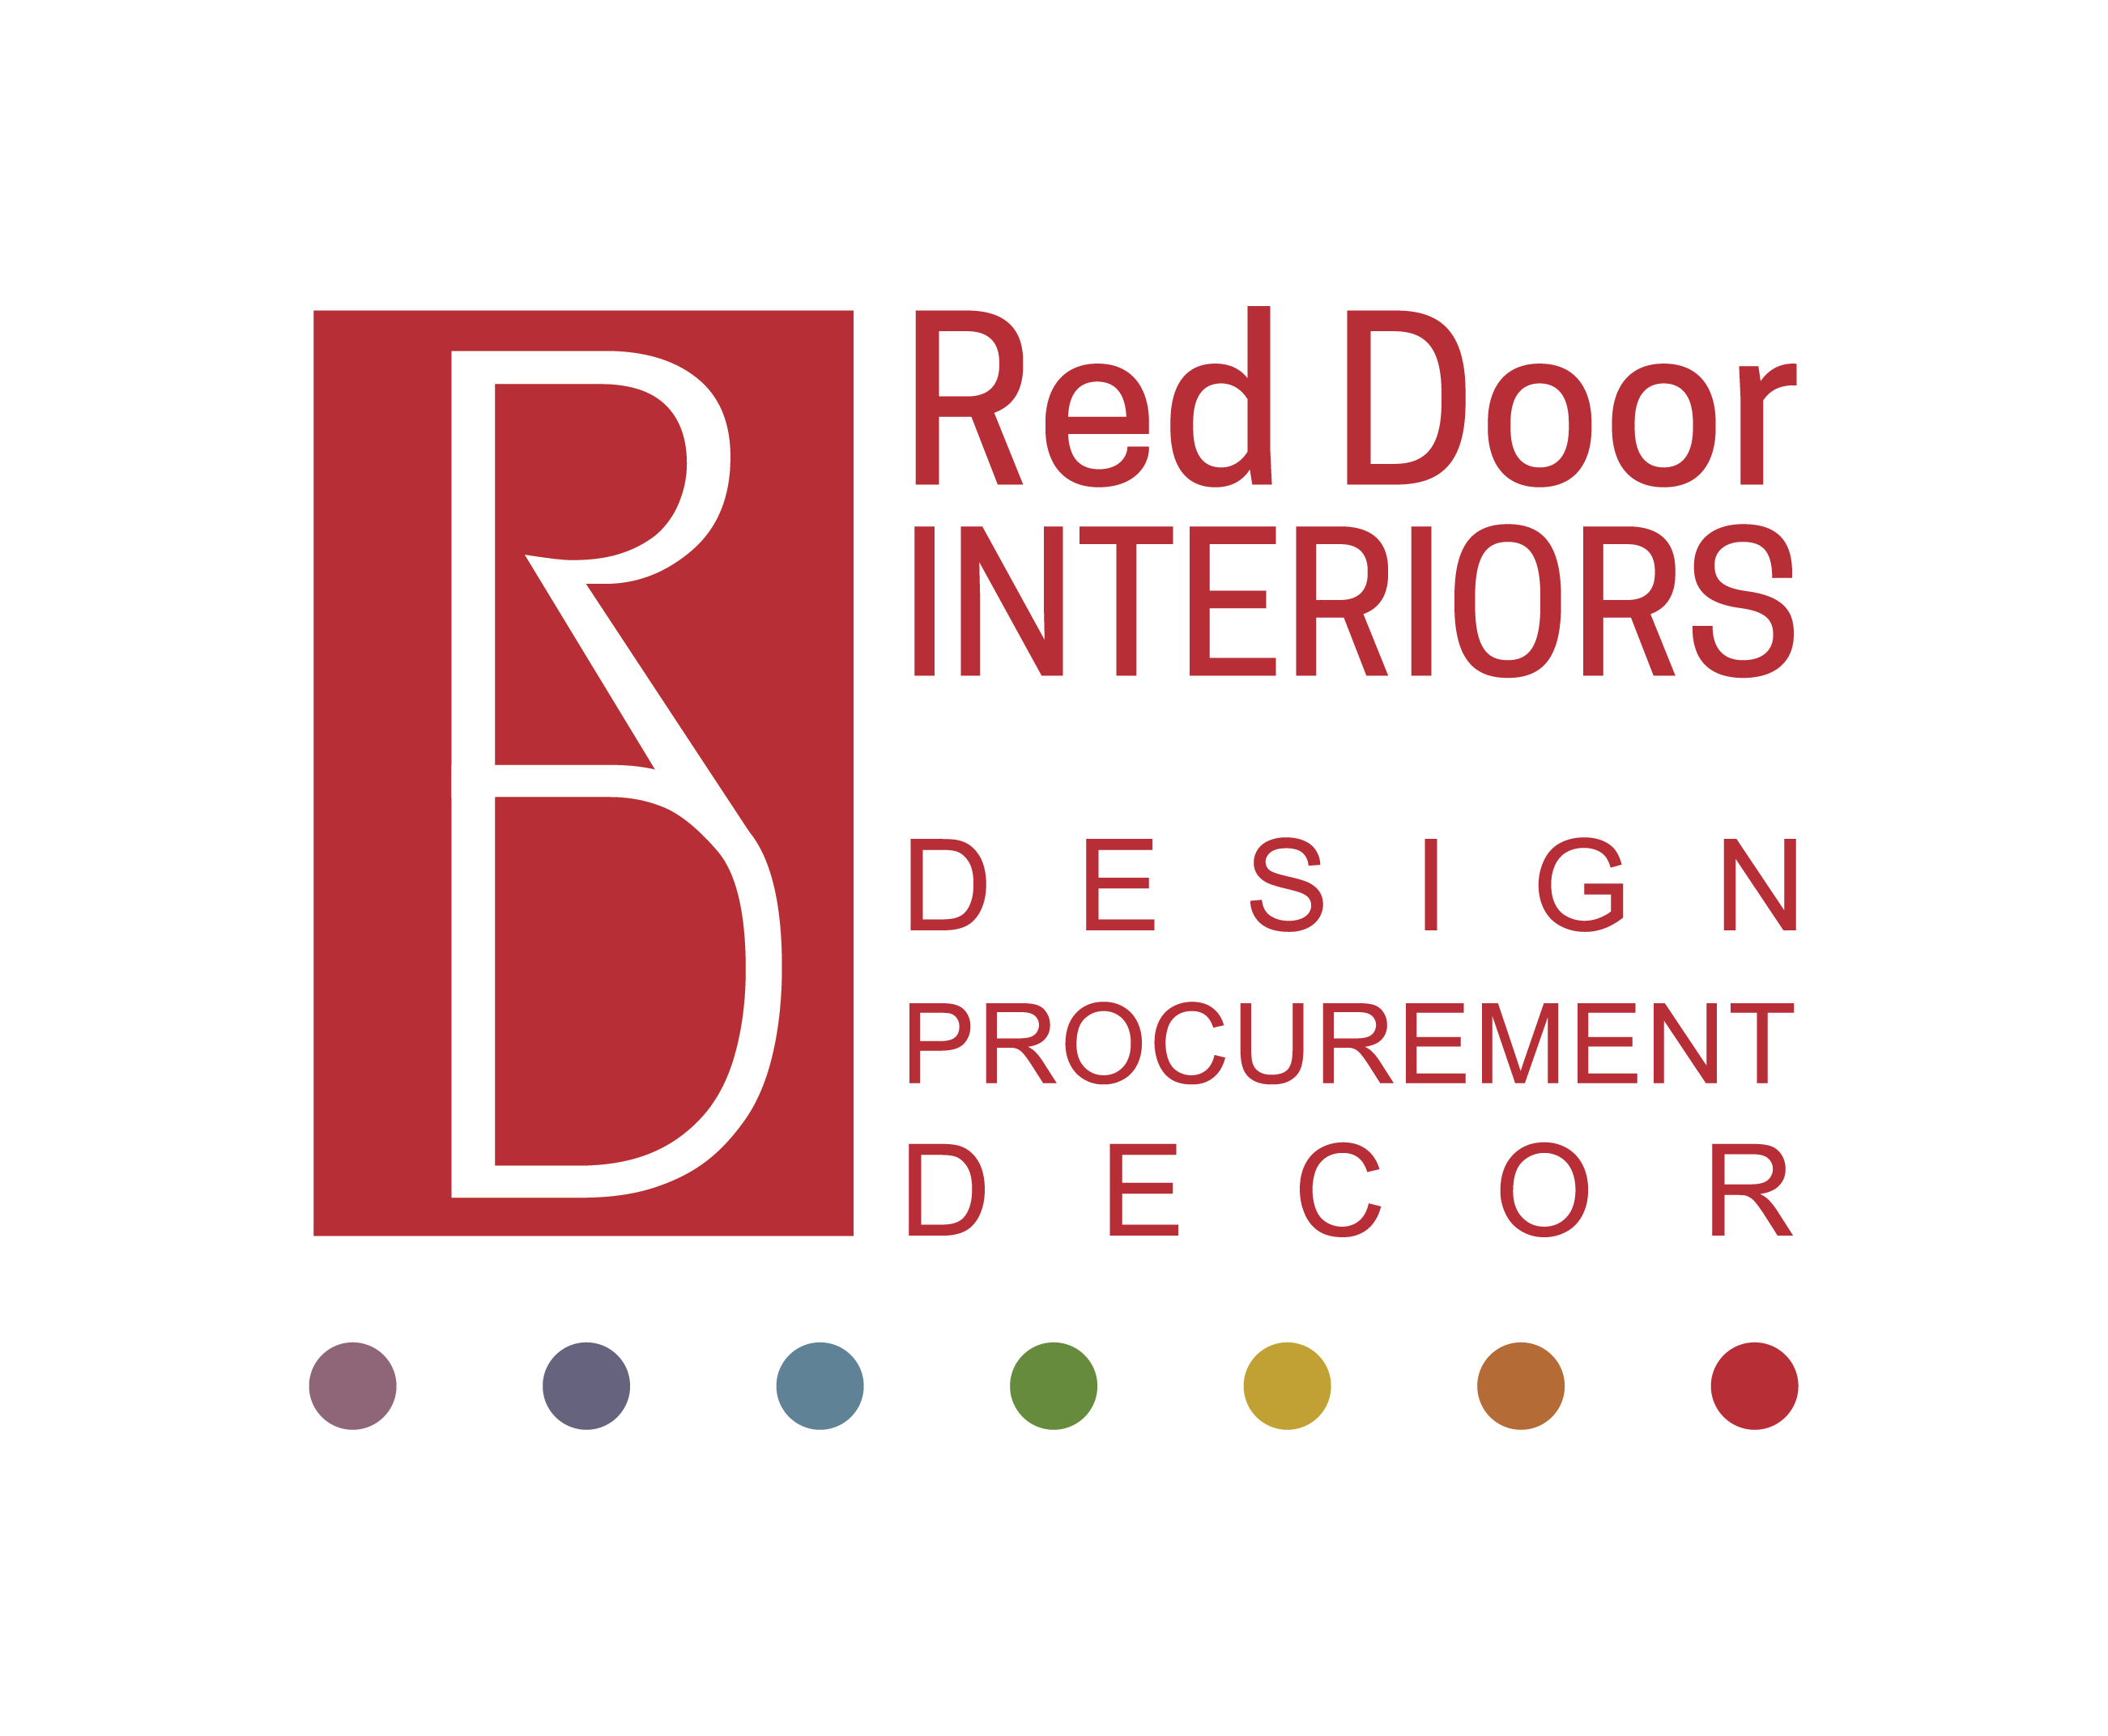 Red Door Interior Design Procurement